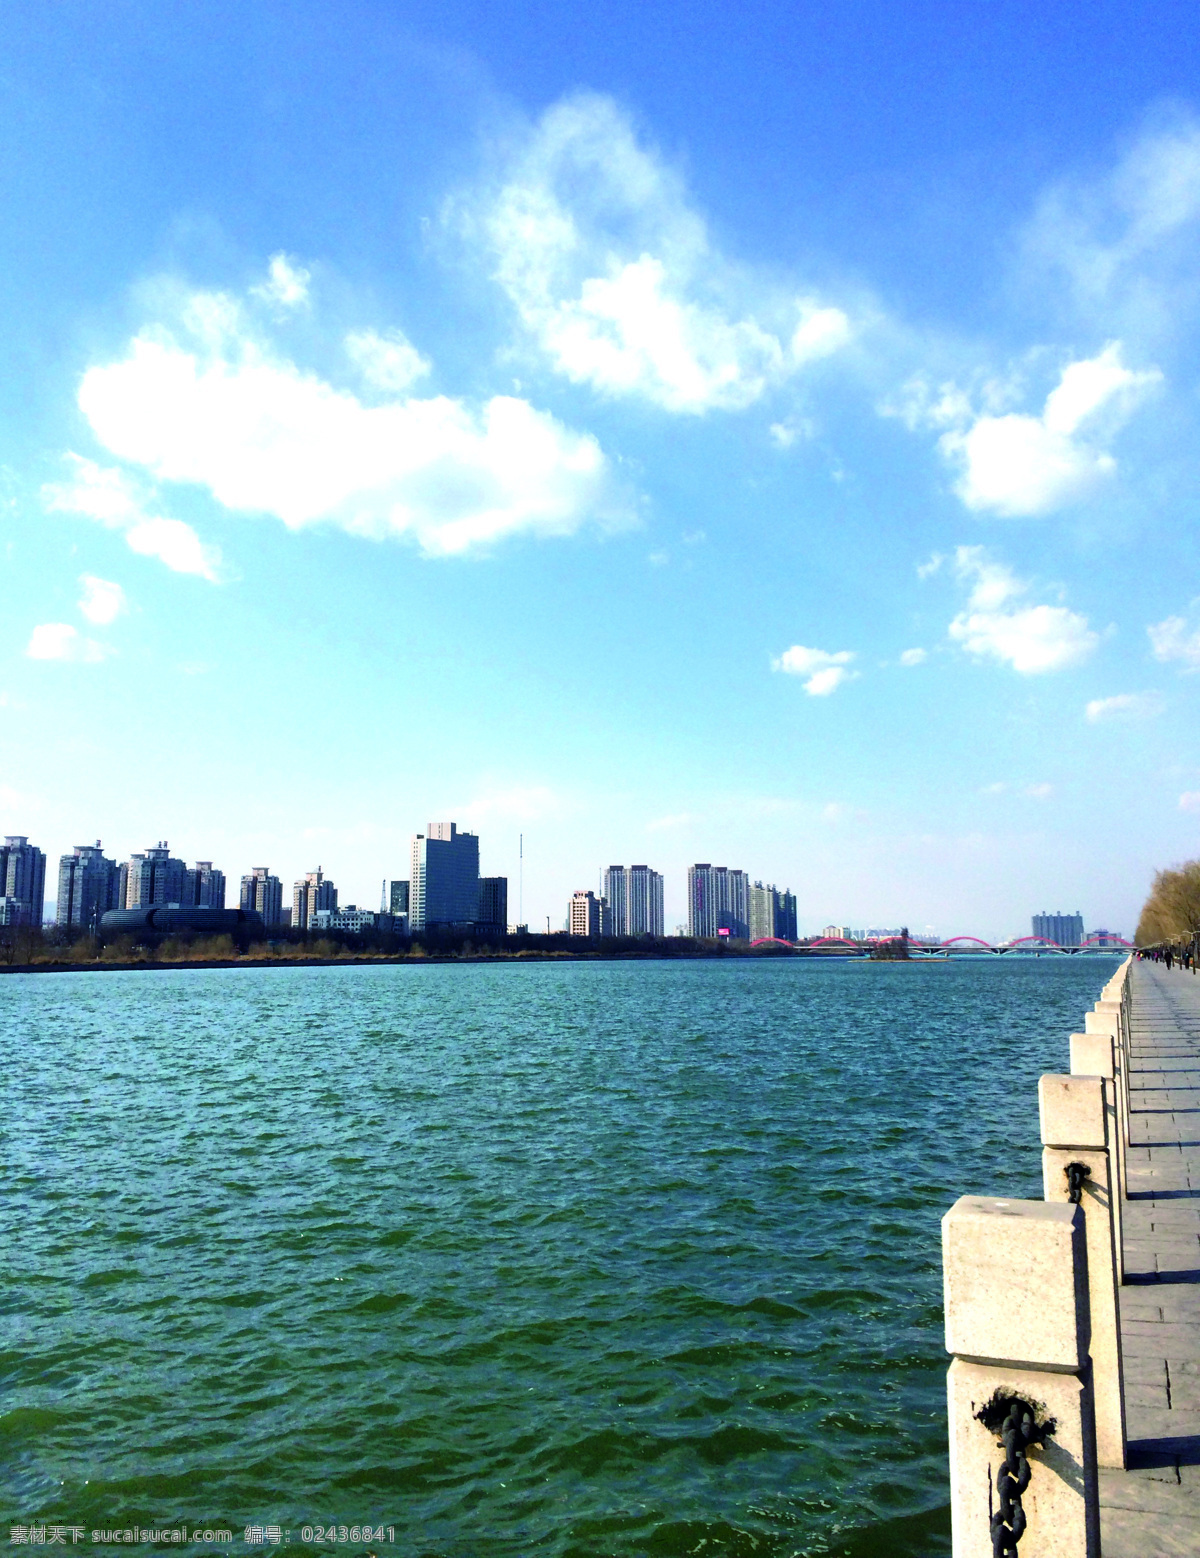 太原汾河 太原 汾河 公园 湖 河 建筑景观 自然景观 青色 天蓝色